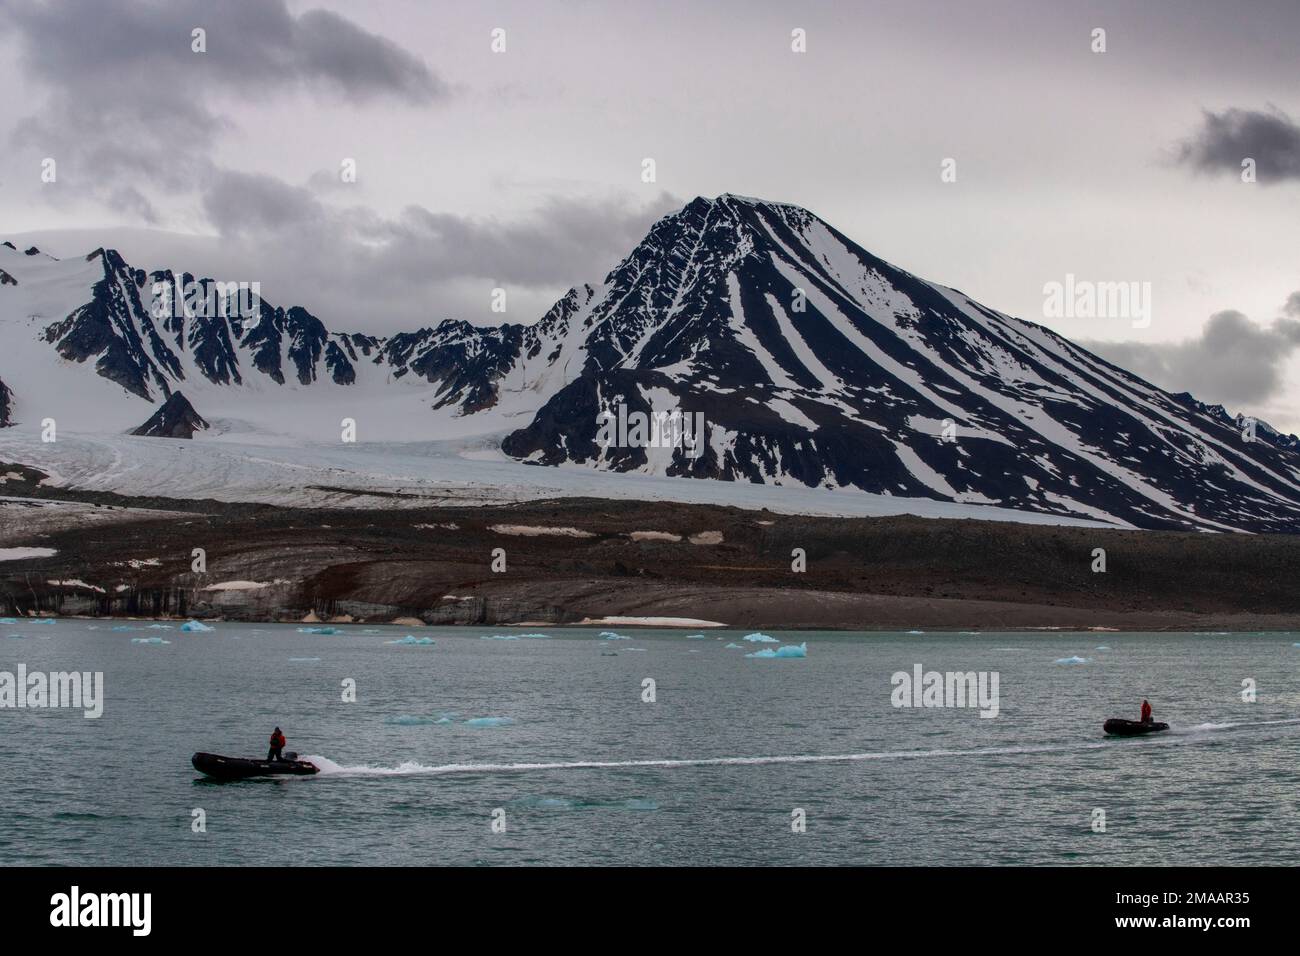 Expédition navire de croisière Greg Mortimer dans l'archipel de Svalbard, dans l'Arctique de la Norvège. Croisière en zodiaque à Lilliehookbreen. Les glaciers fondent lentement en raison de la cl Banque D'Images